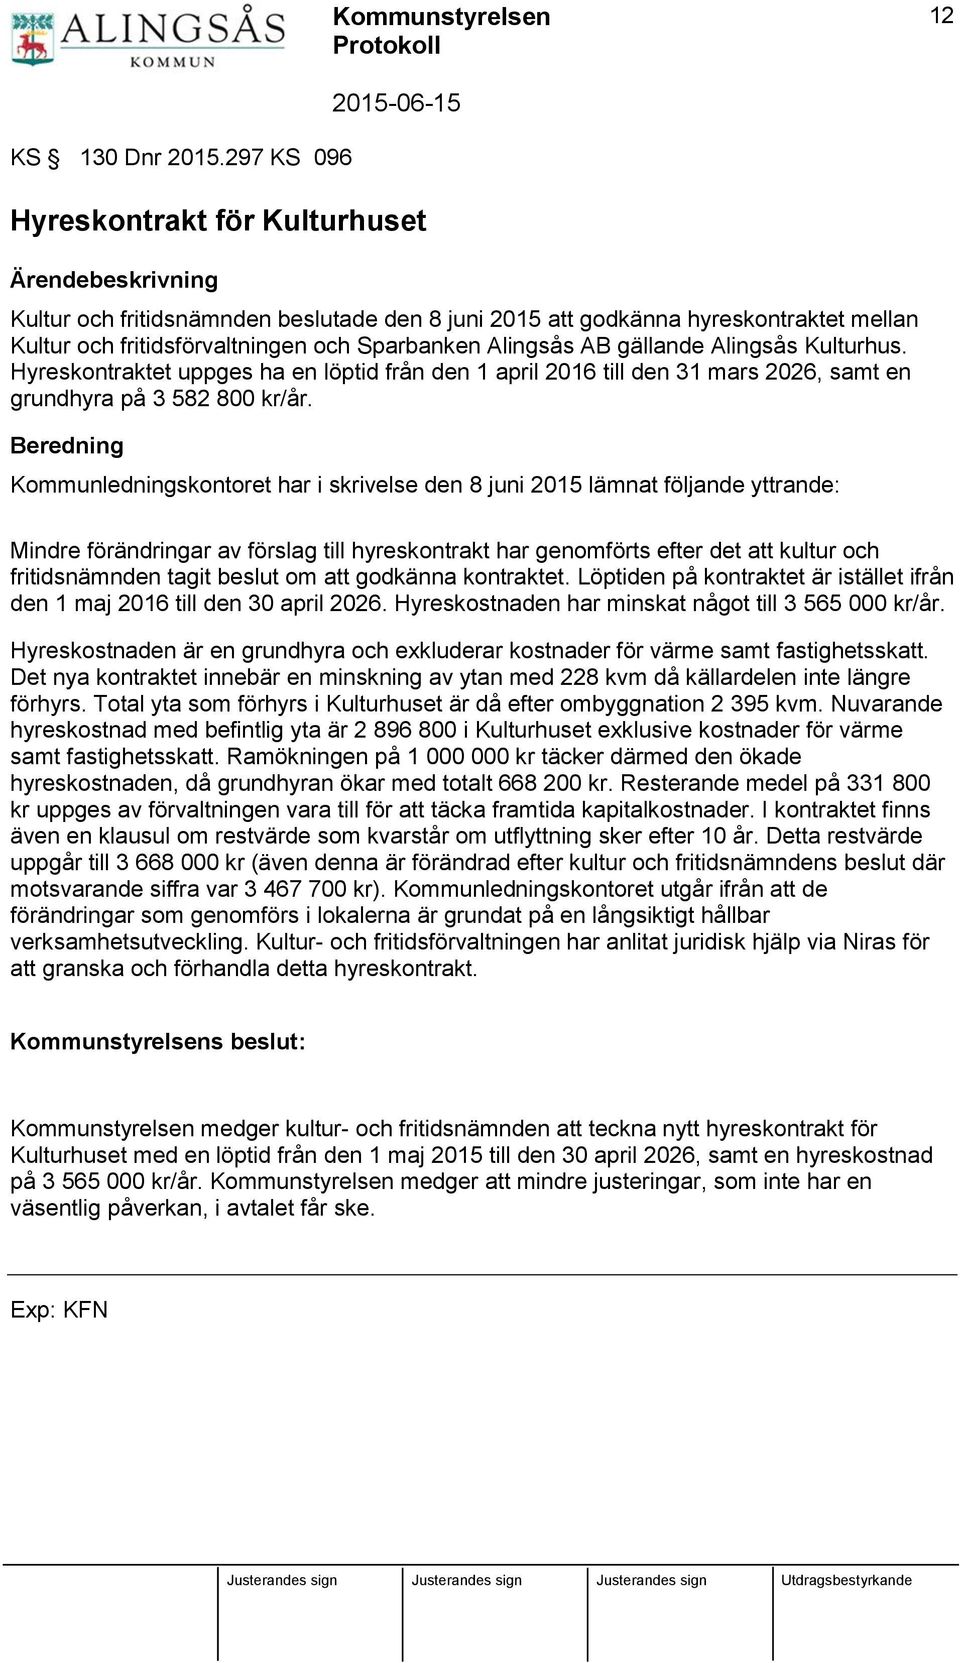 Alingsås AB gällande Alingsås Kulturhus. Hyreskontraktet uppges ha en löptid från den 1 april 2016 till den 31 mars 2026, samt en grundhyra på 3 582 800 kr/år.